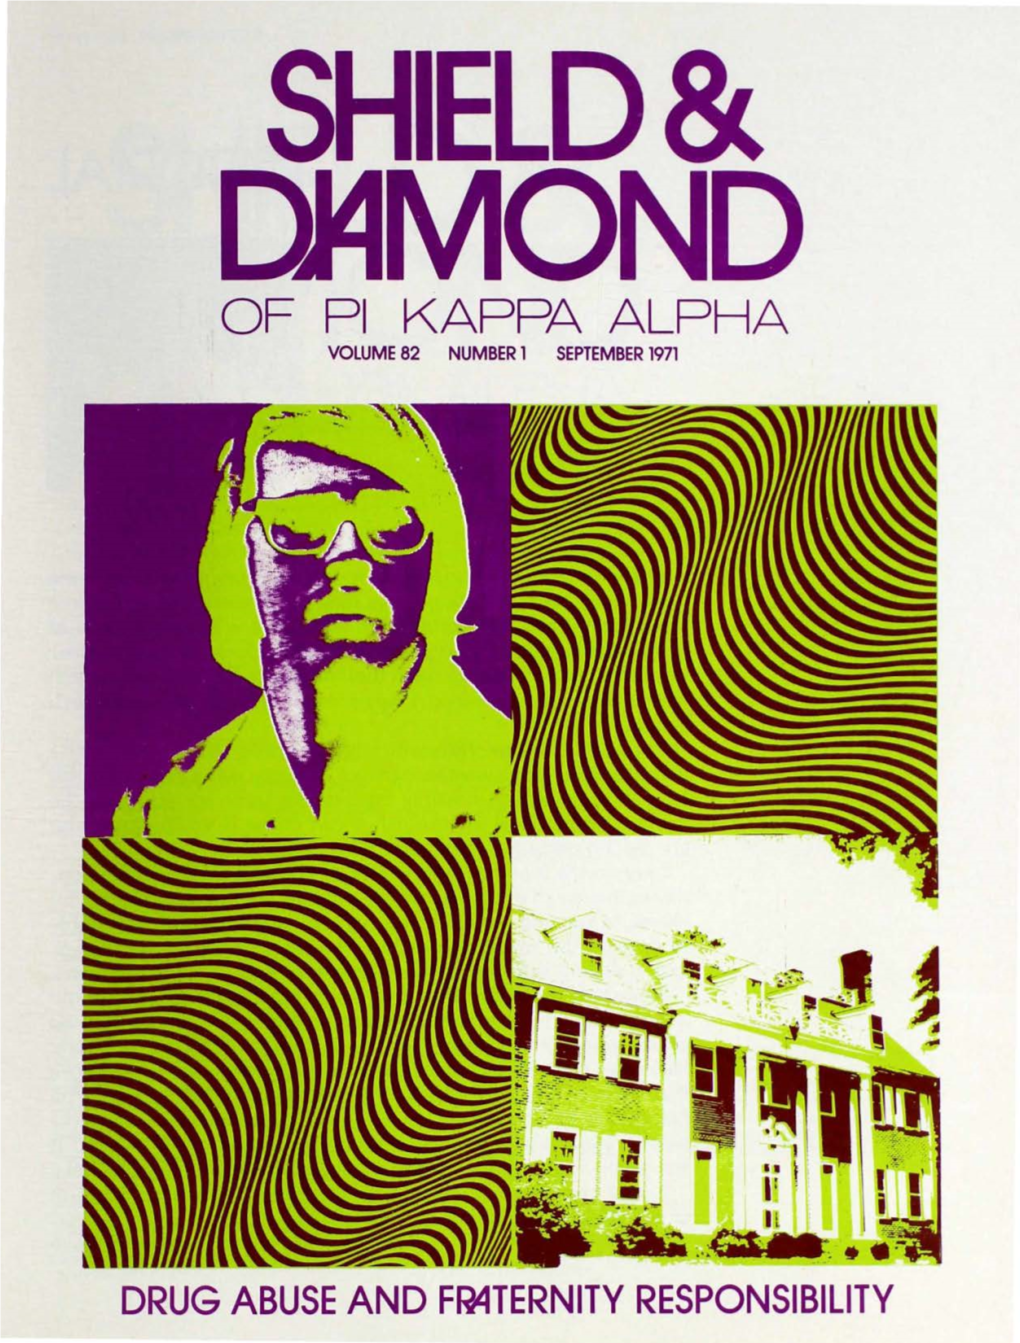 Of Pi Kappa Alpha Volume 82 Number 1 September 1971